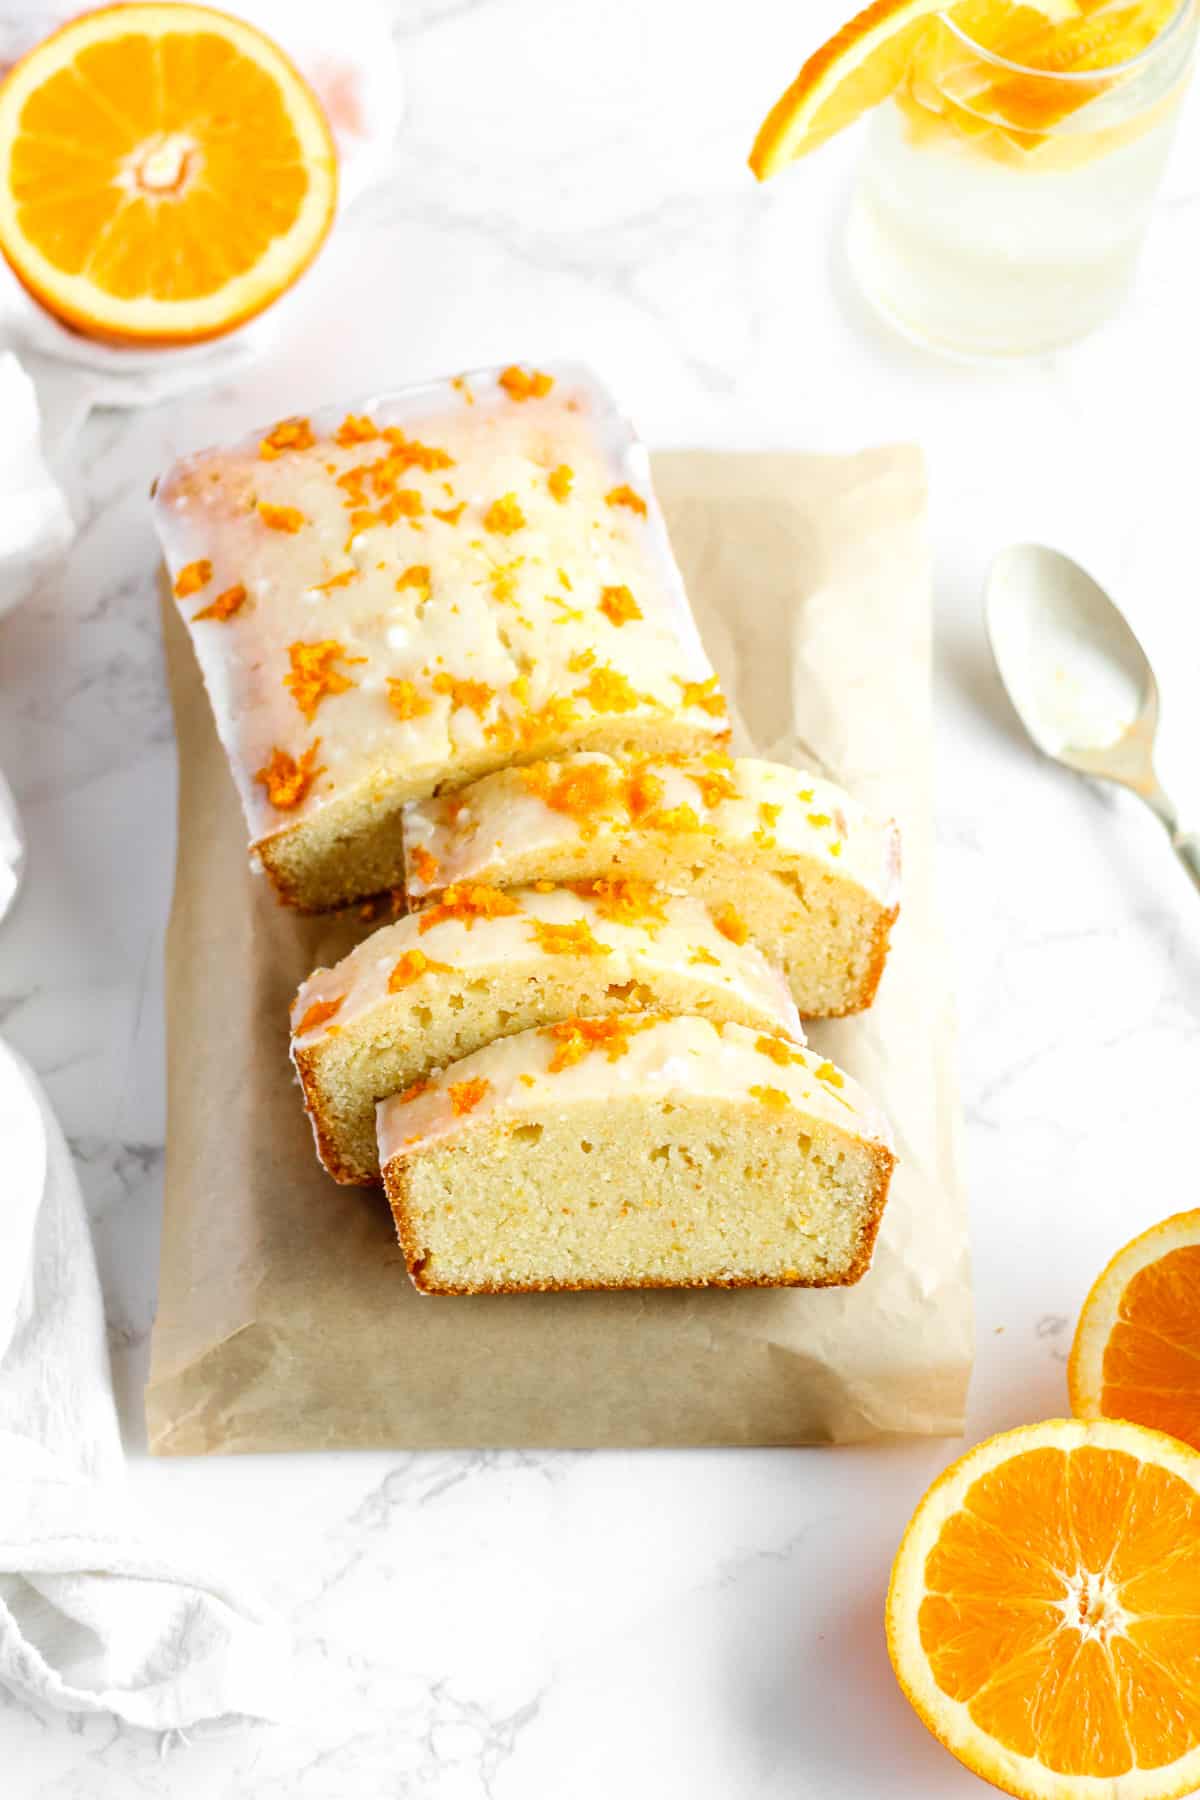 Sliced orange loaf cake with citrus glaze.